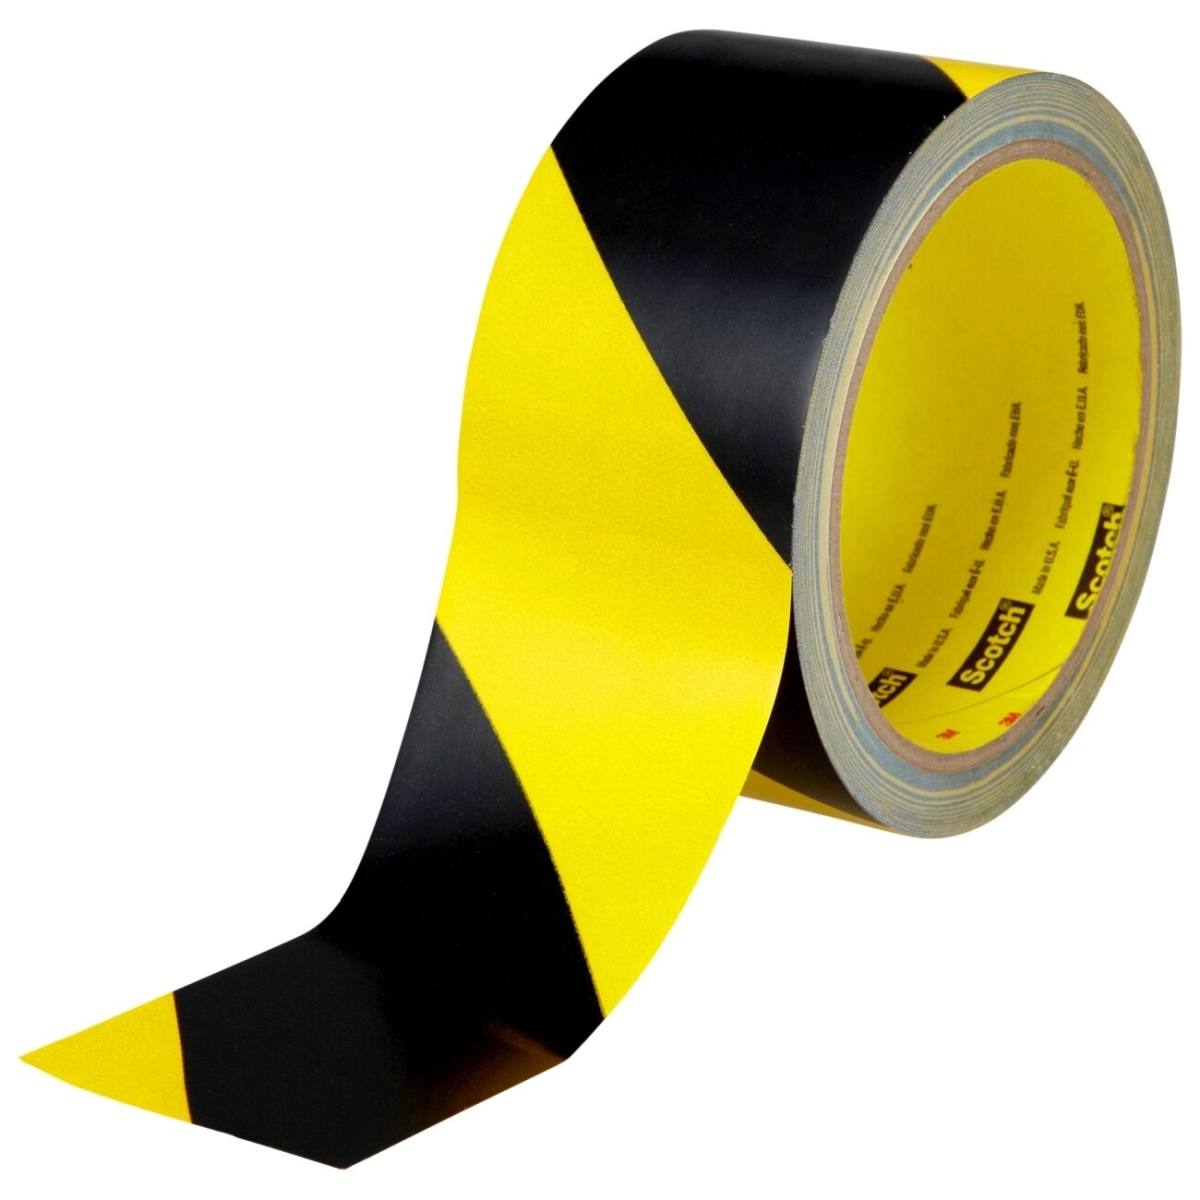 nastro segnaletico 3M 5702, giallo/nero, 50 mm x 33 m, confezionato singolarmente e in modo pratico